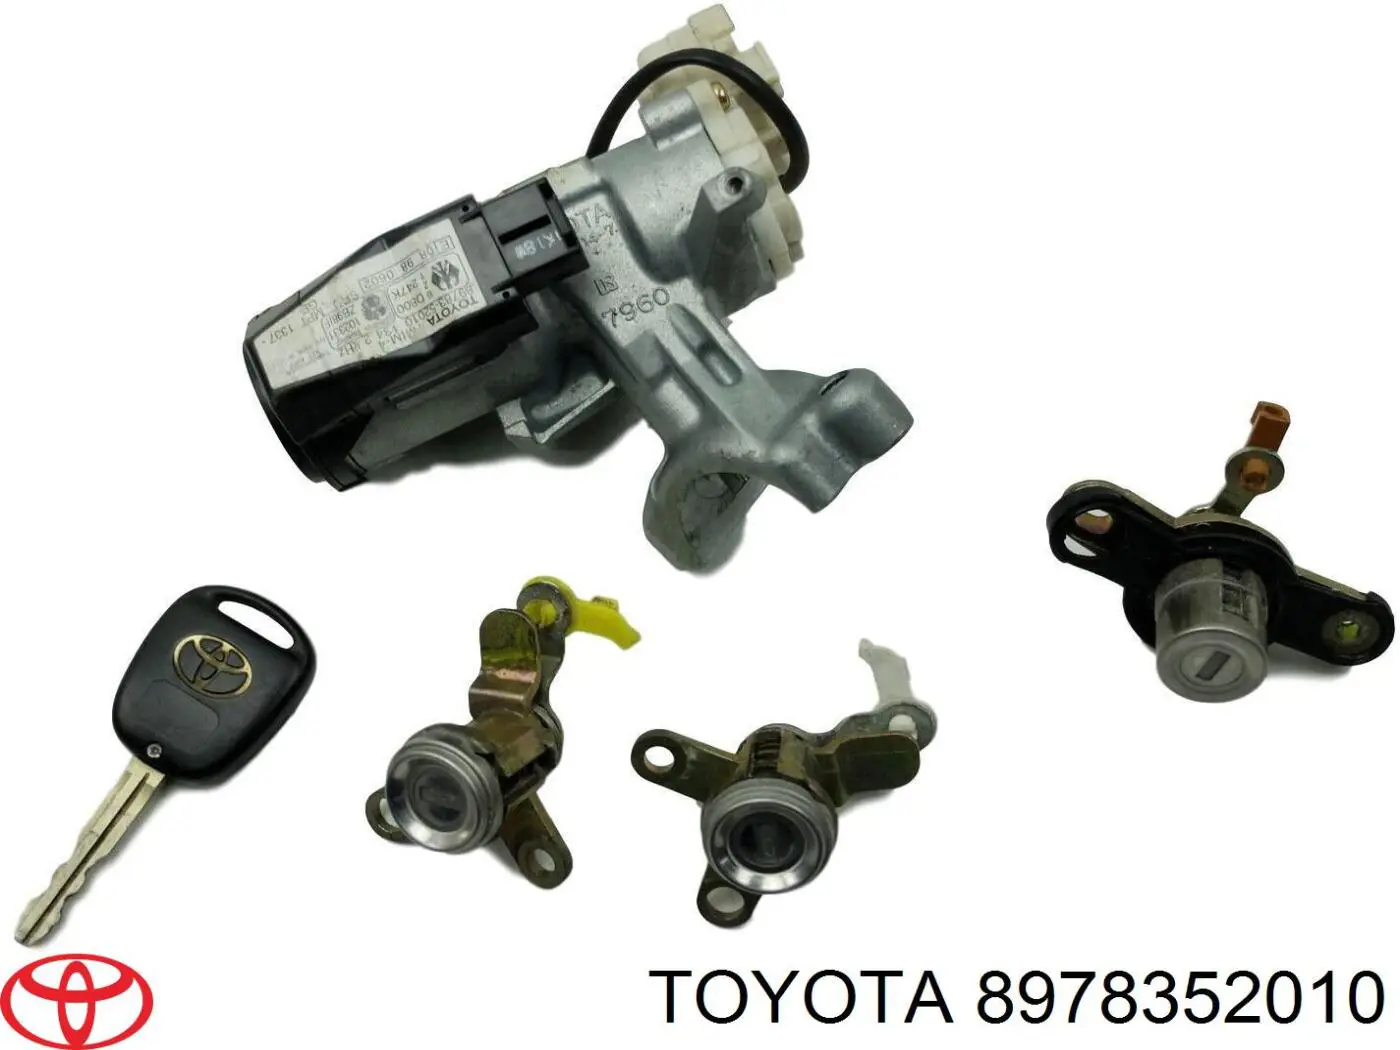 8978352010 Toyota antena ( anillo de inmovilizador)